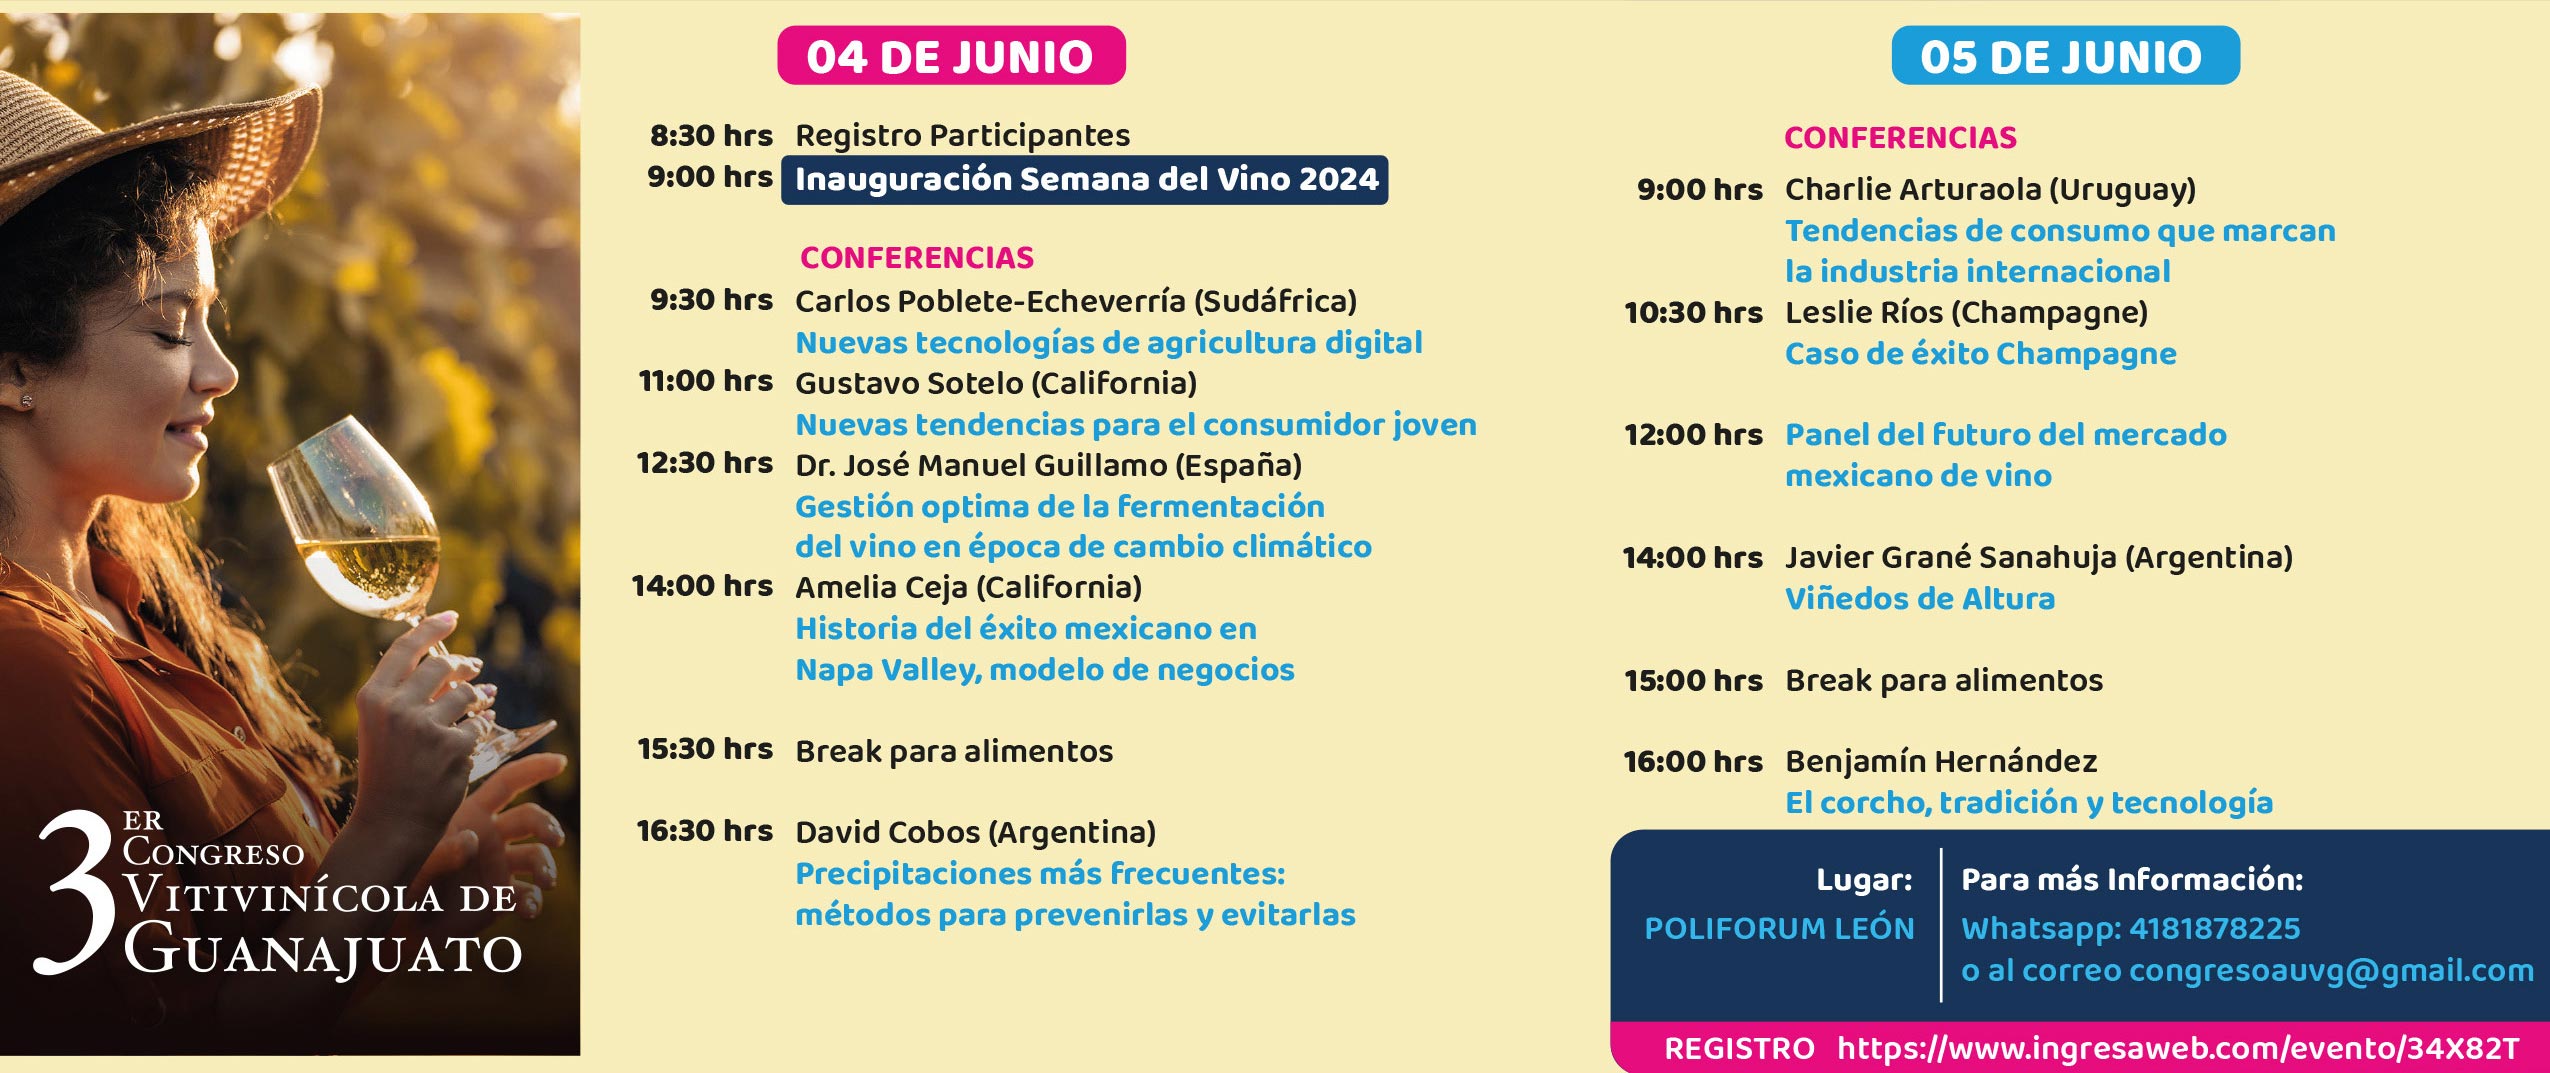 Semana del vino 2024 en Guanajuato